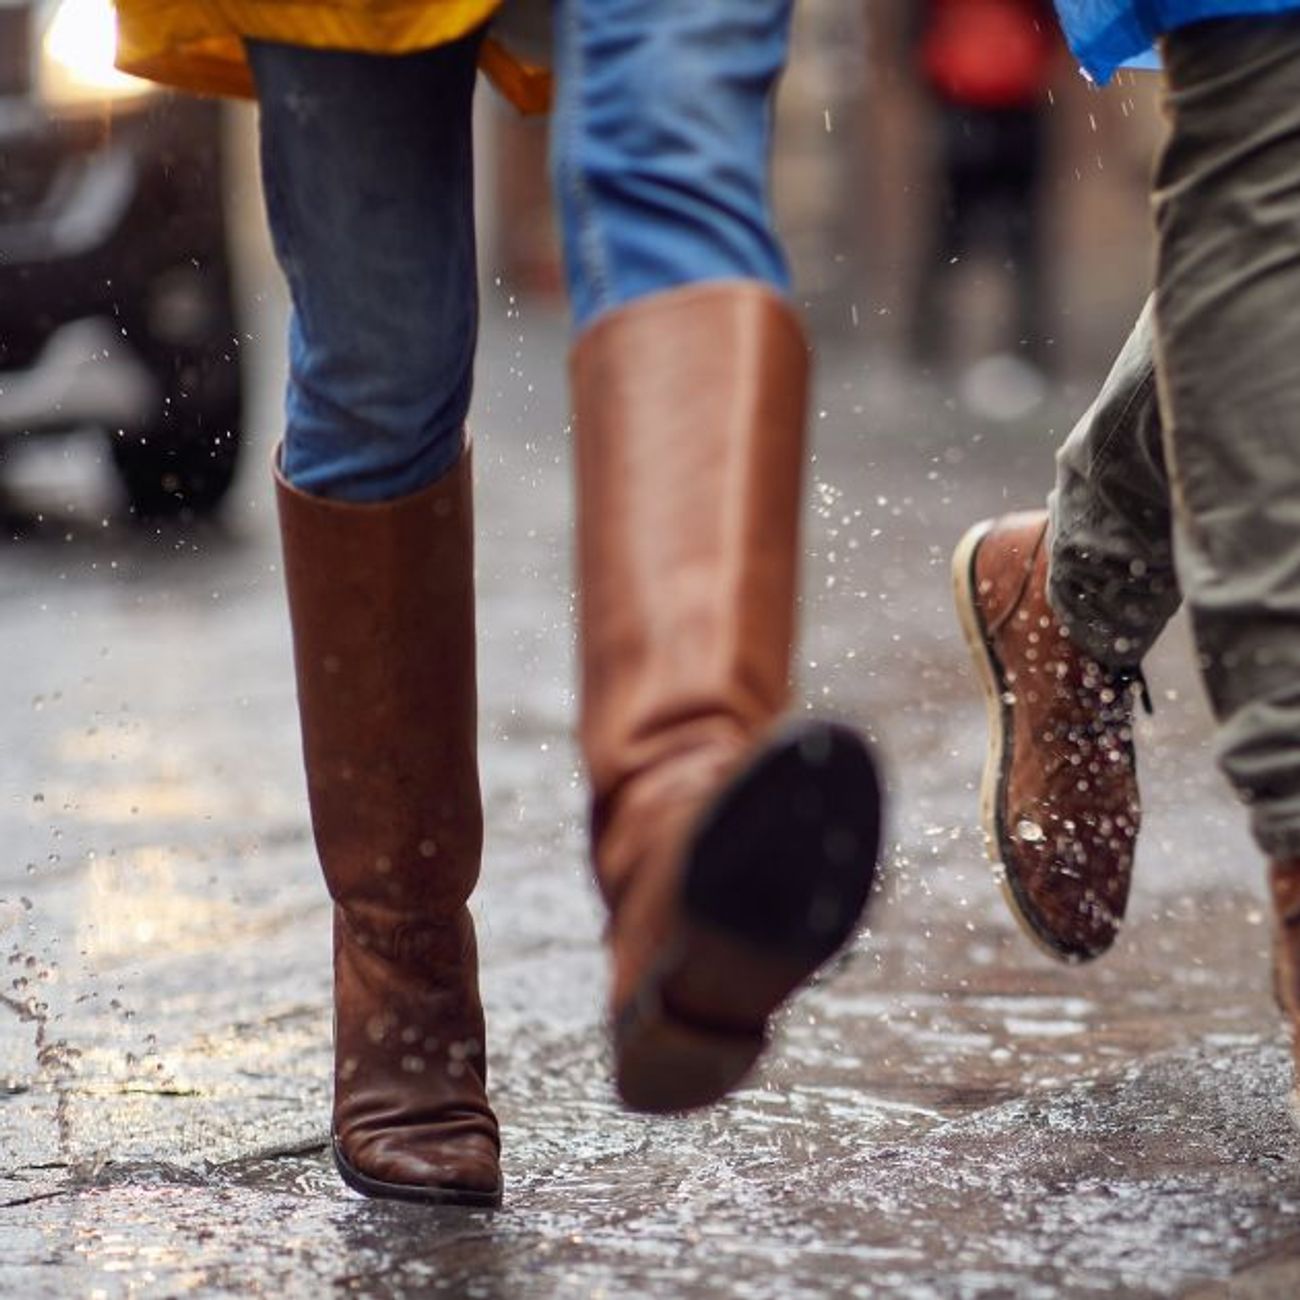 Marcher sous la pluie permettrait d'atténuer le stress, selon une